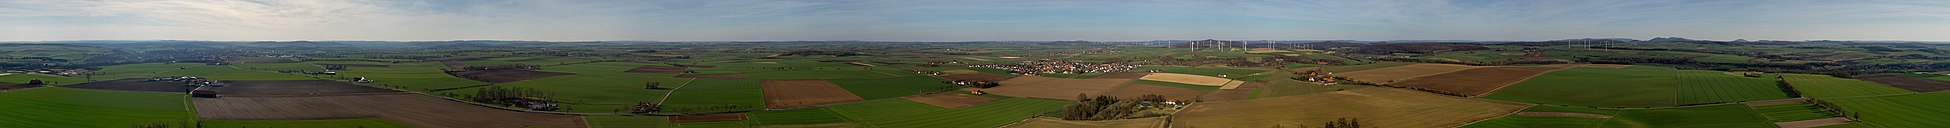 Panoramaansicht der Warburger Börde vom Desenberg